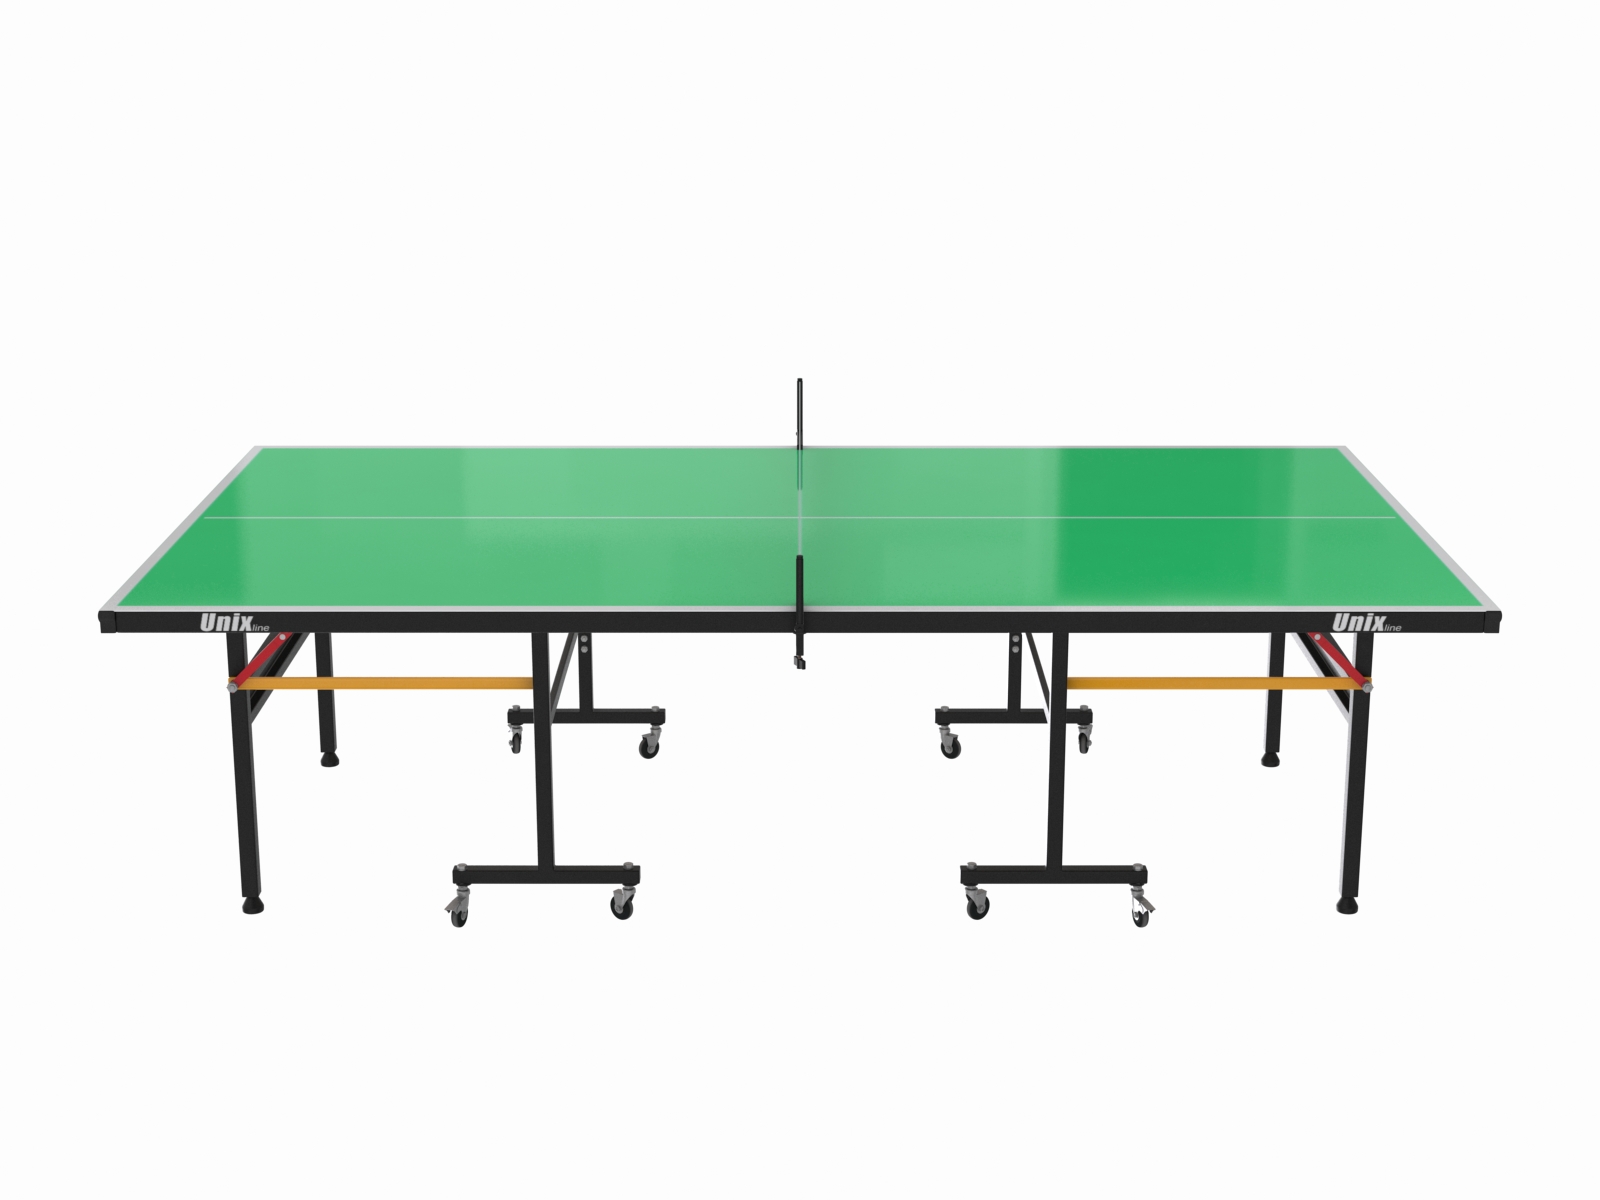 Всепогодный теннисный стол UNIX Line outdoor 6mm (green) - 7 